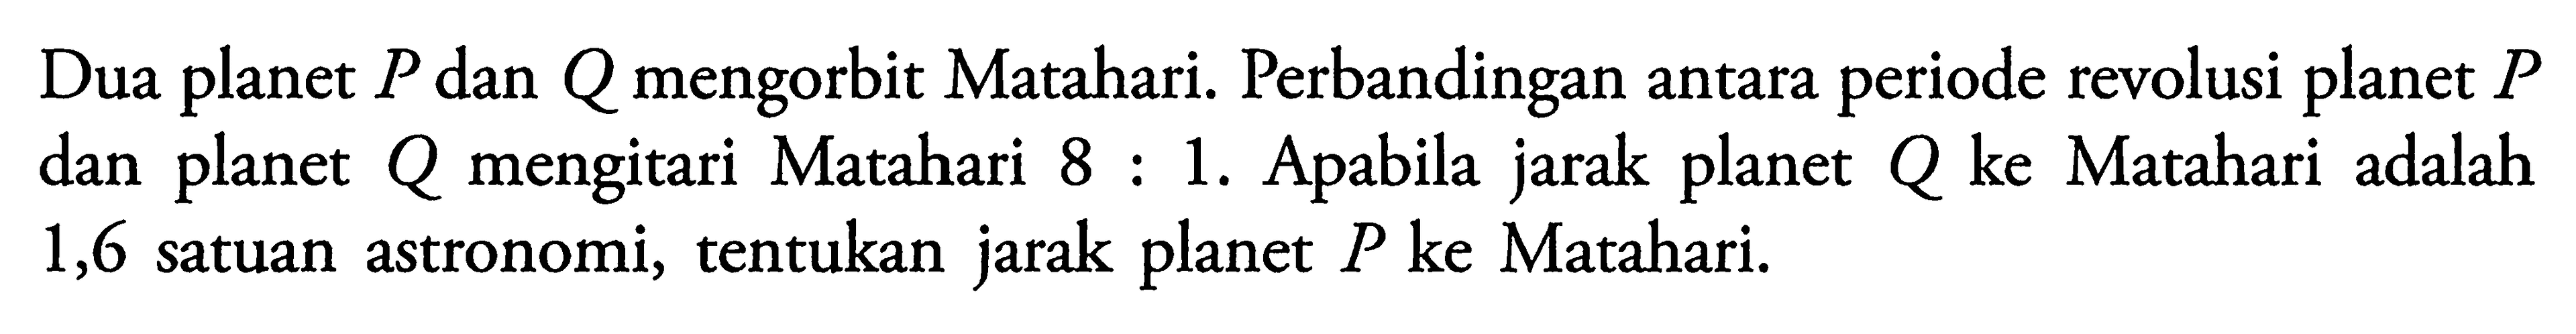 Dua planet P dan Q mengorbit Matahari. Perbandingan antara periode revolusi planet P dan planet Q mengitari Matahari 8:1. Apabila jarak planet Q ke Matahari adalah 1,6 satuan astronomi, tentukan jarak planet P ke Matahari.